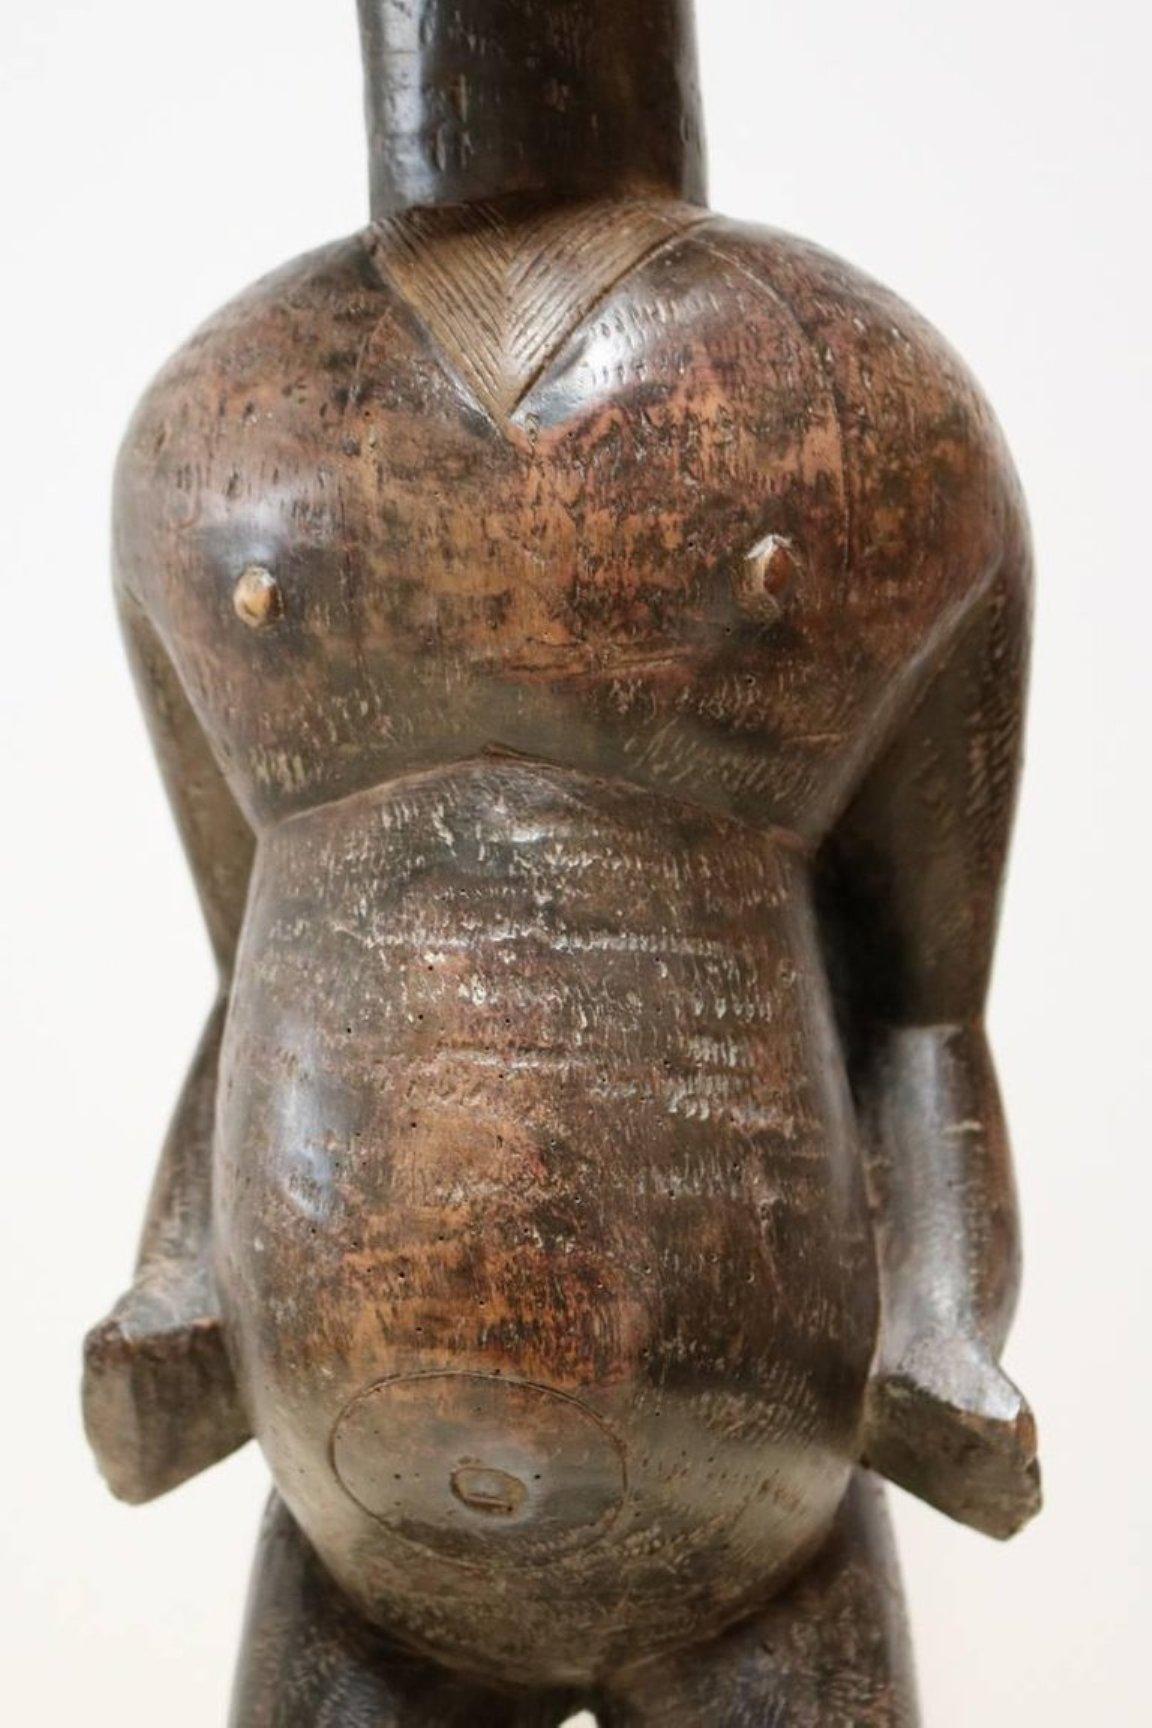 Figurine en bois sculpté du peuple Lobi d'Afrique de l'Ouest.

